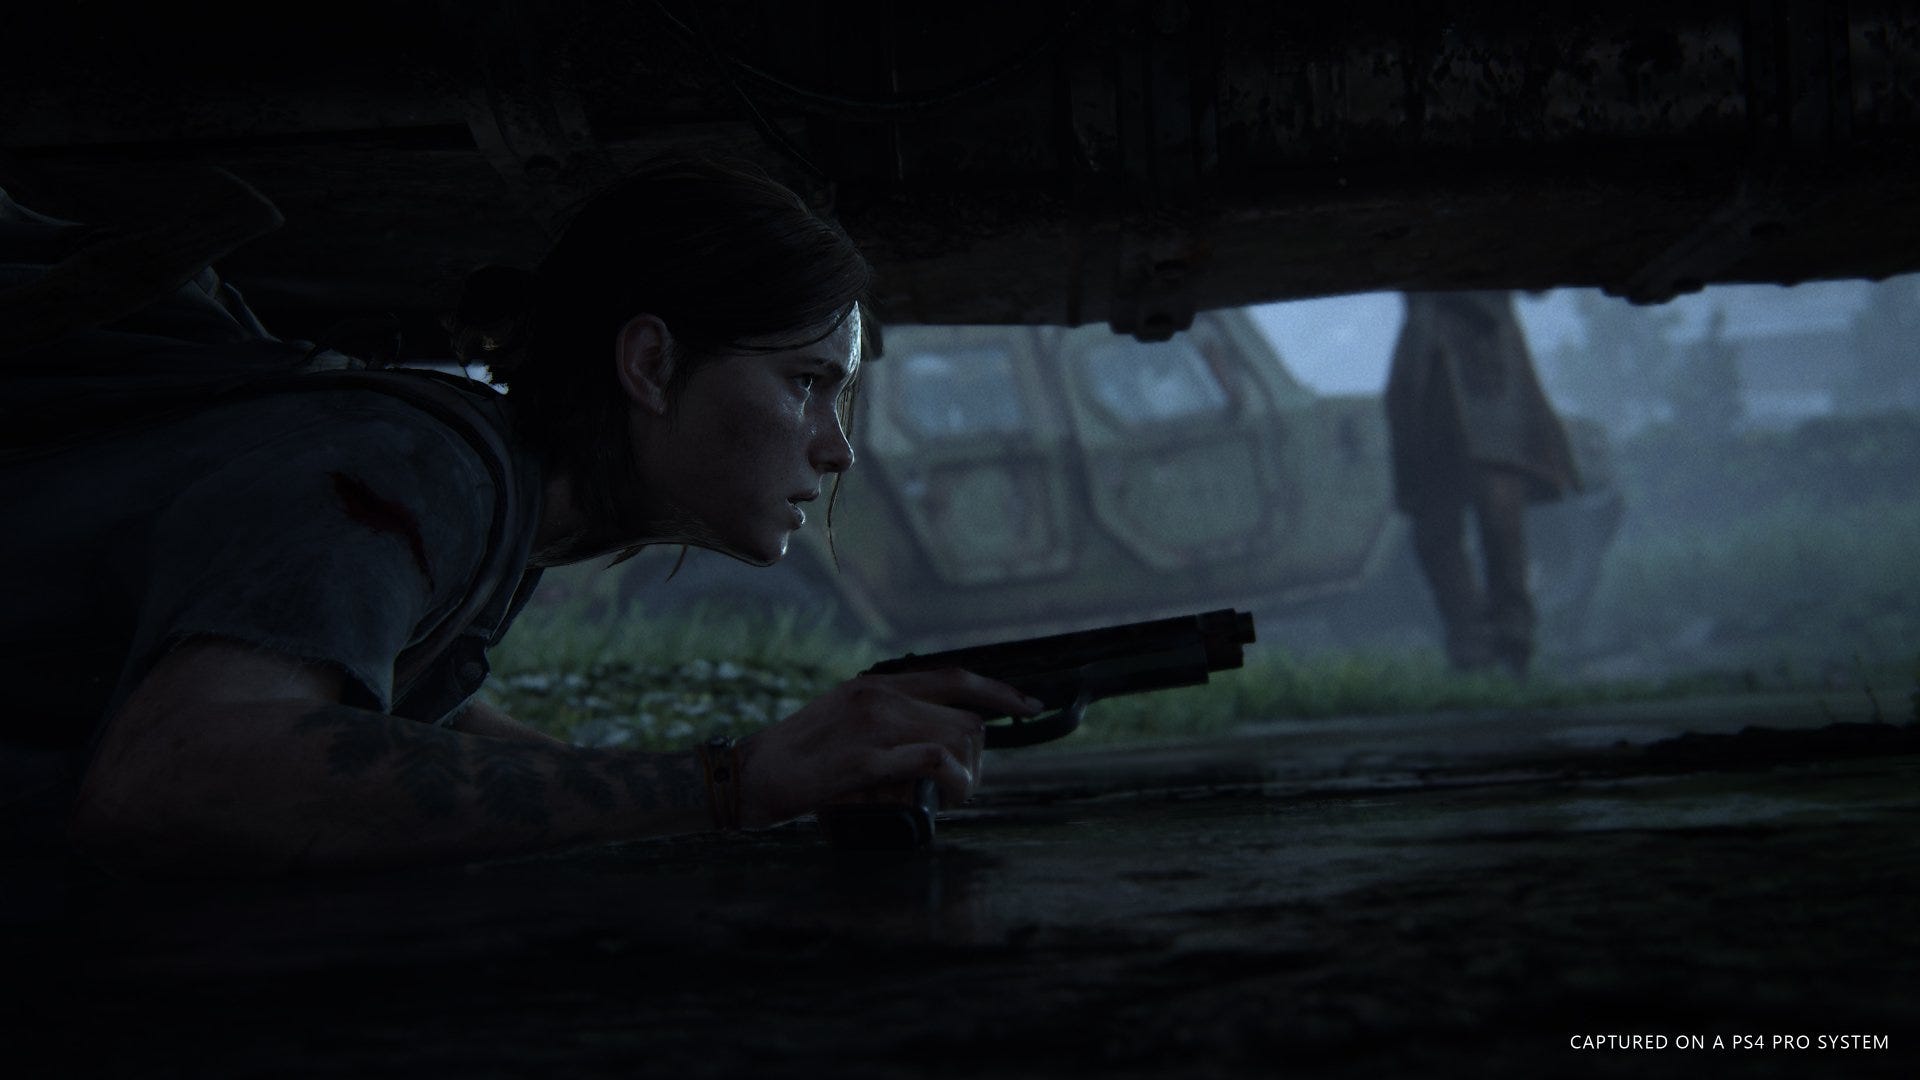 The Last of Us II ganha curta com narrativa de vingança de Ellie